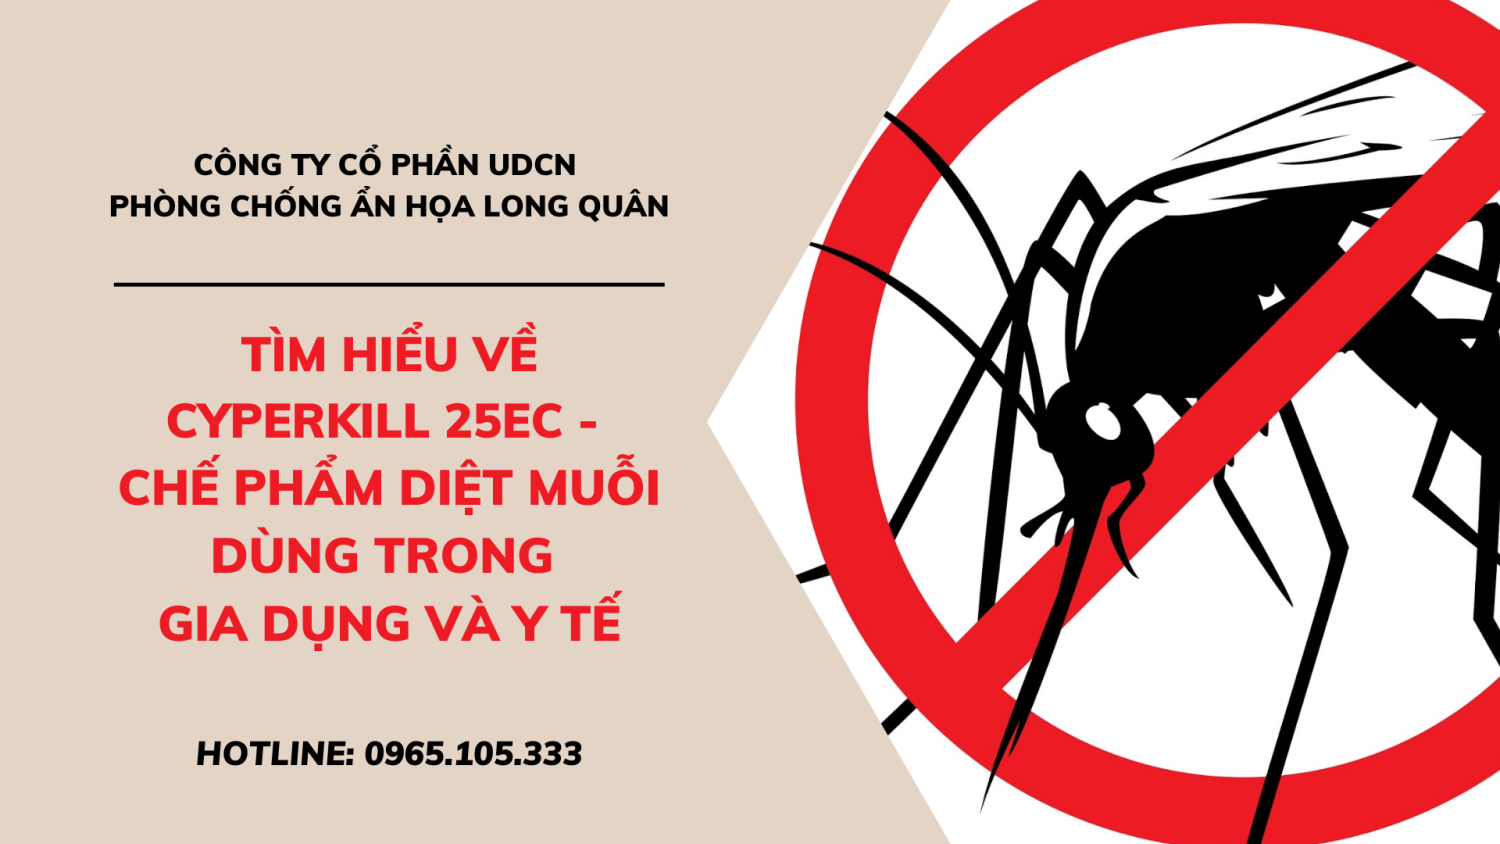 Tìm hiểu về Cyperkill 25EC - Chế phẩm diệt muỗi dùng trong gia dụng và y tế